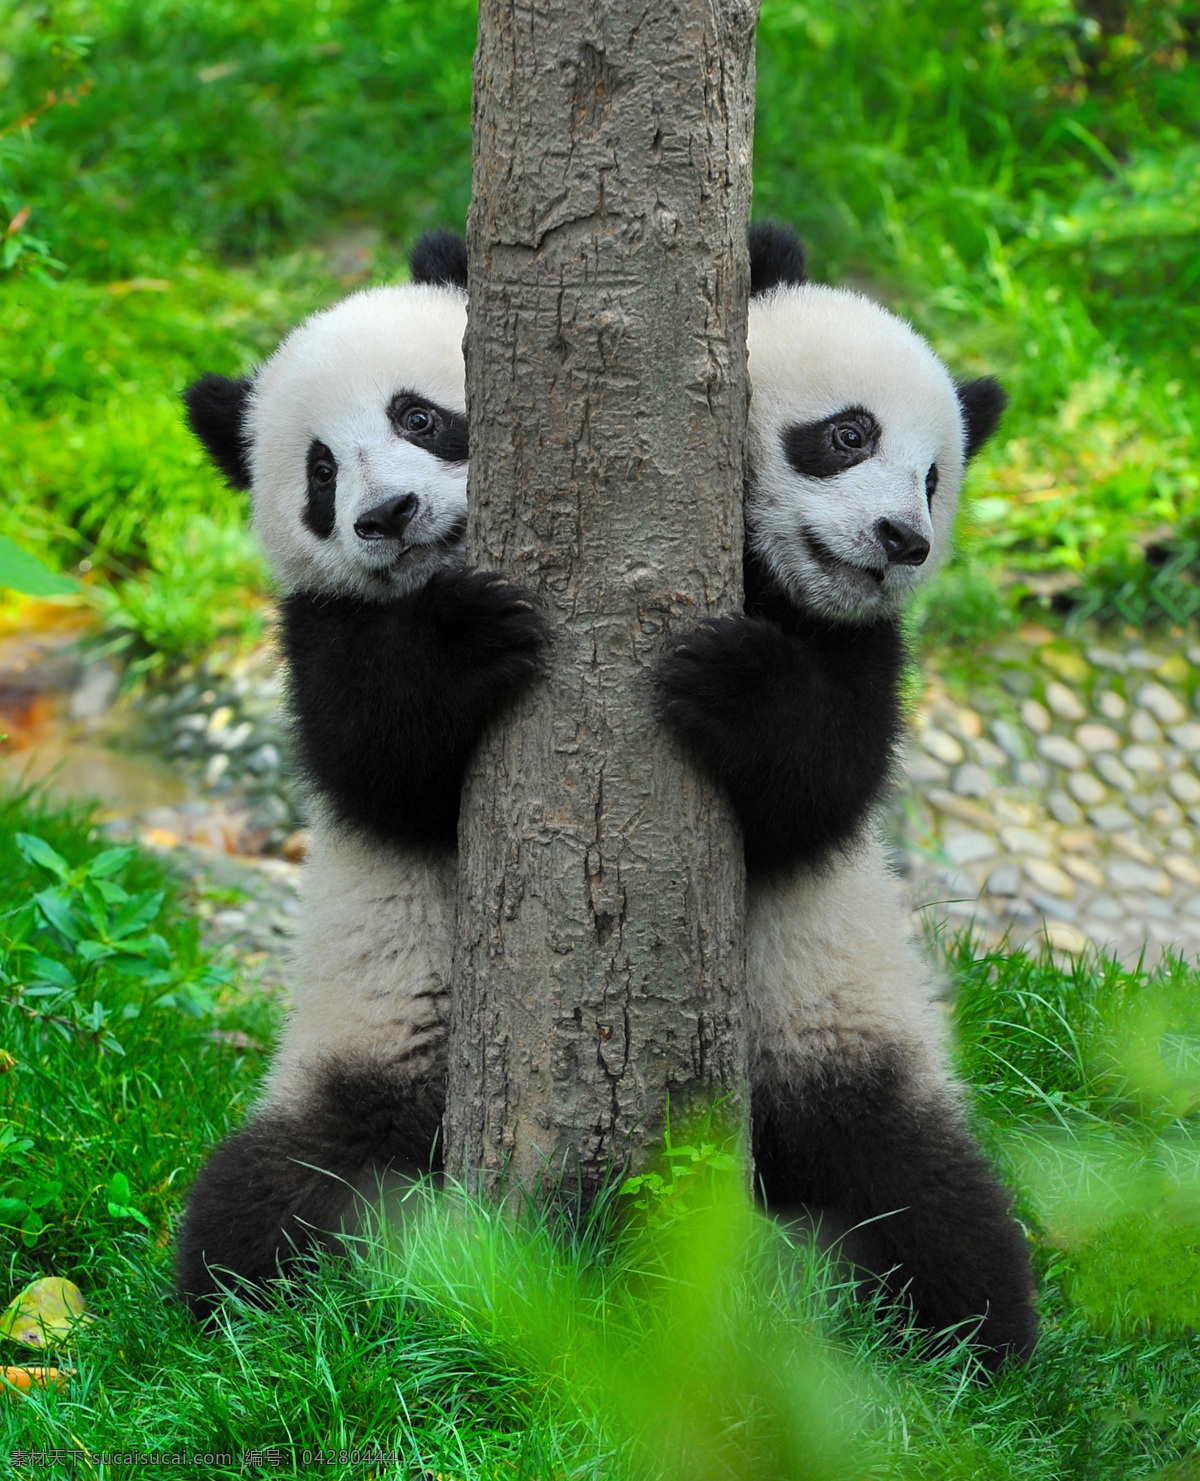 两 只 可爱 熊猫 大熊猫 熊猫摄影 动物世界 动物摄影 陆地动物 生物世界 绿色